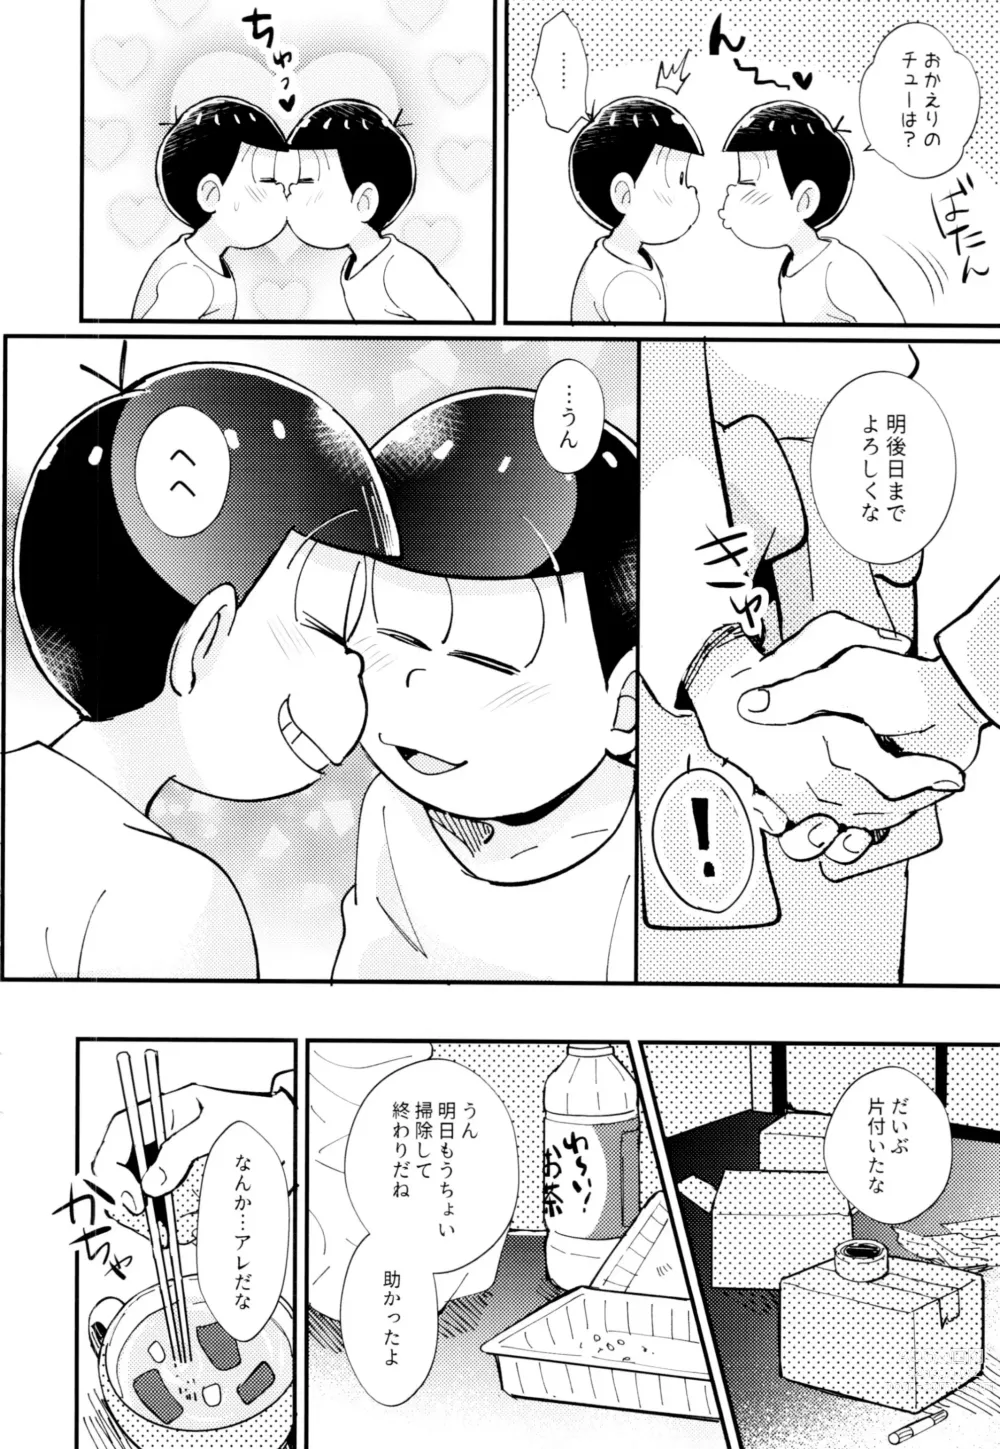 Page 20 of doujinshi 2-haku 3-kka, Kimi to Sakurasaku Apart de